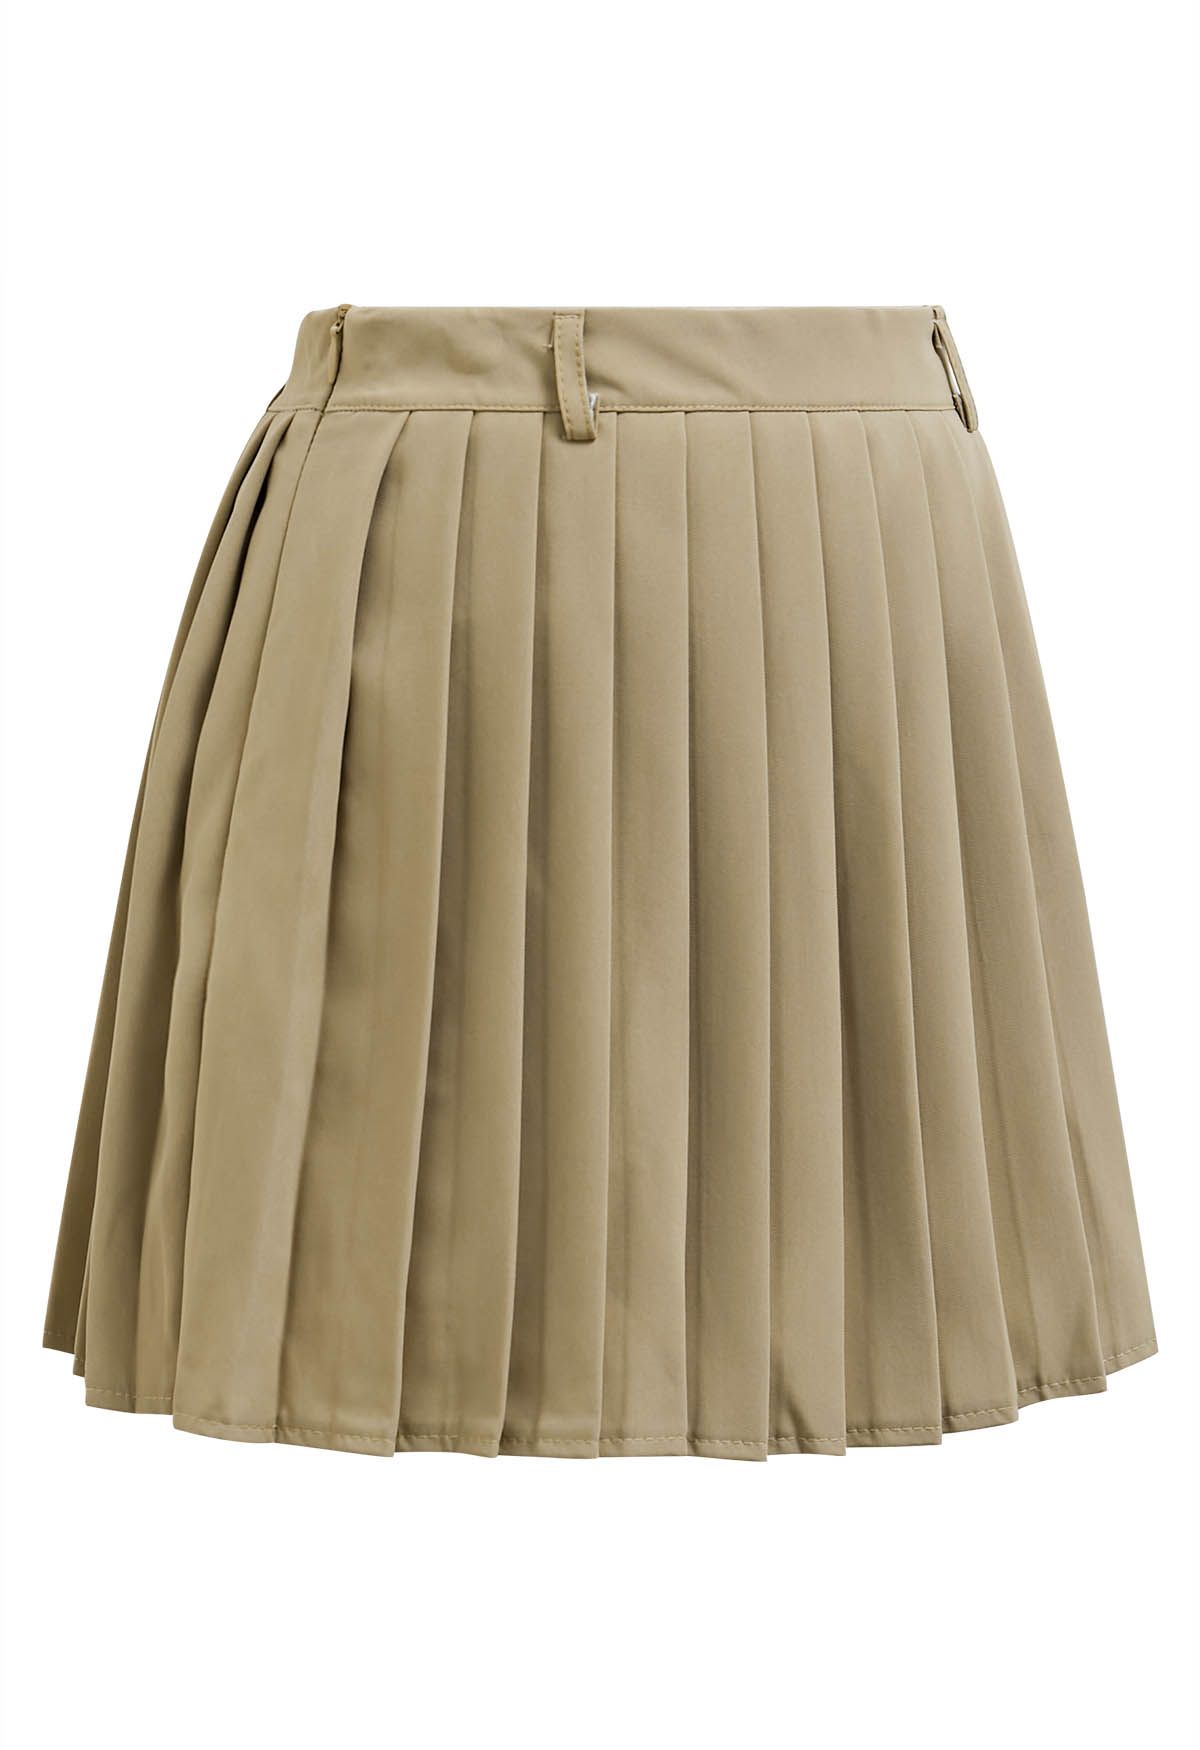 Minifalda plisada clásica en color canela claro